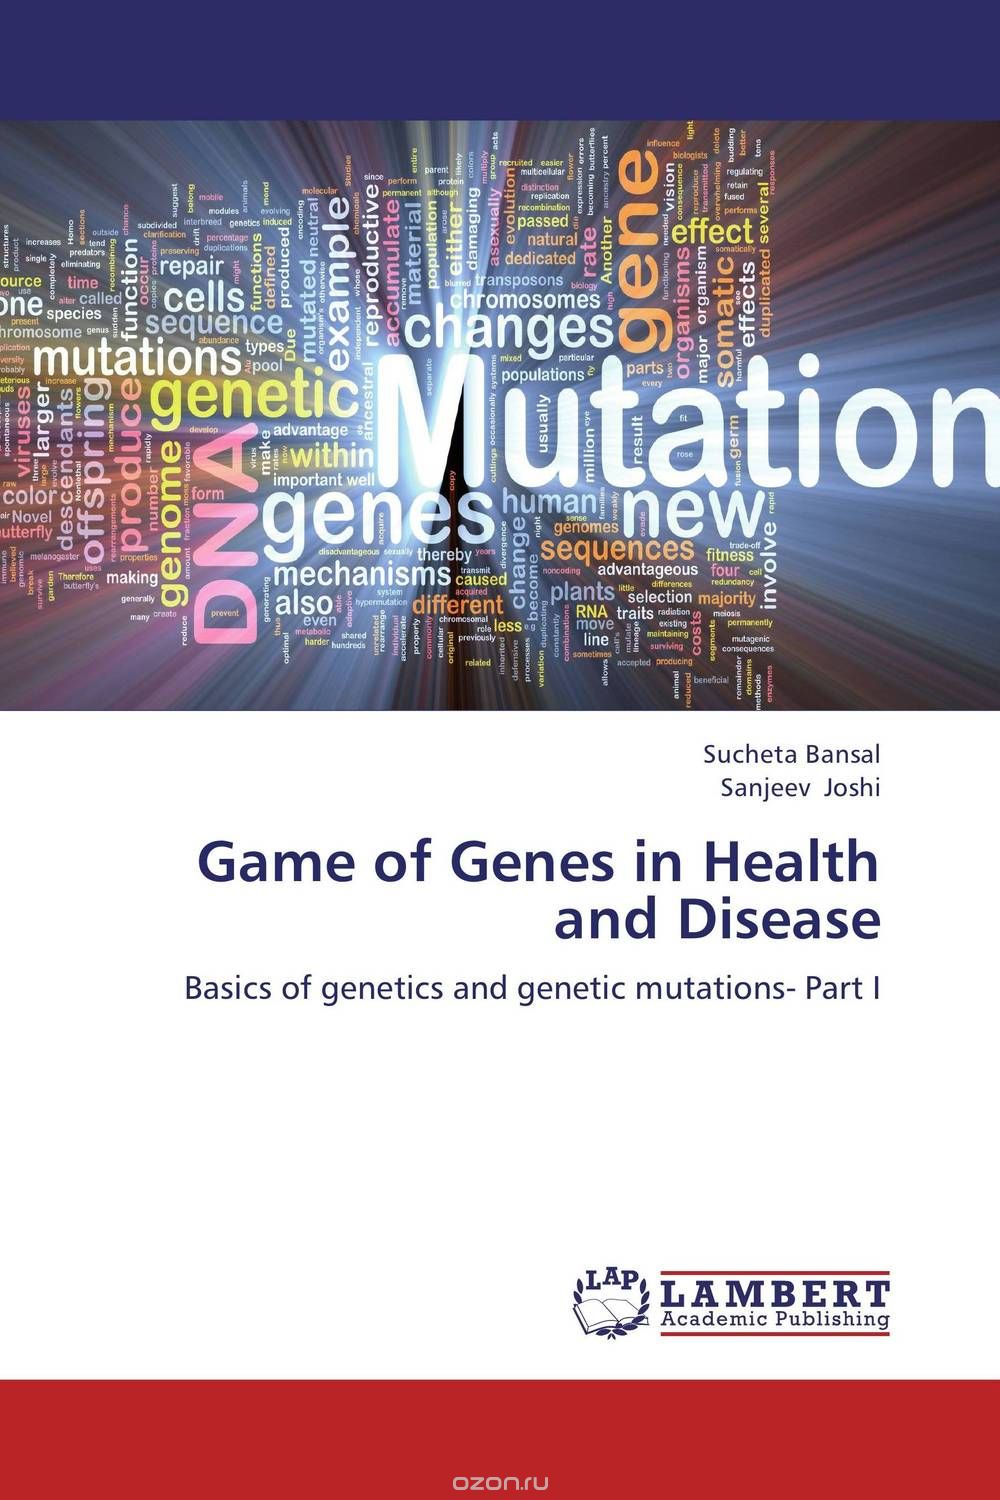 Скачать книгу "Game of Genes in Health and Disease"